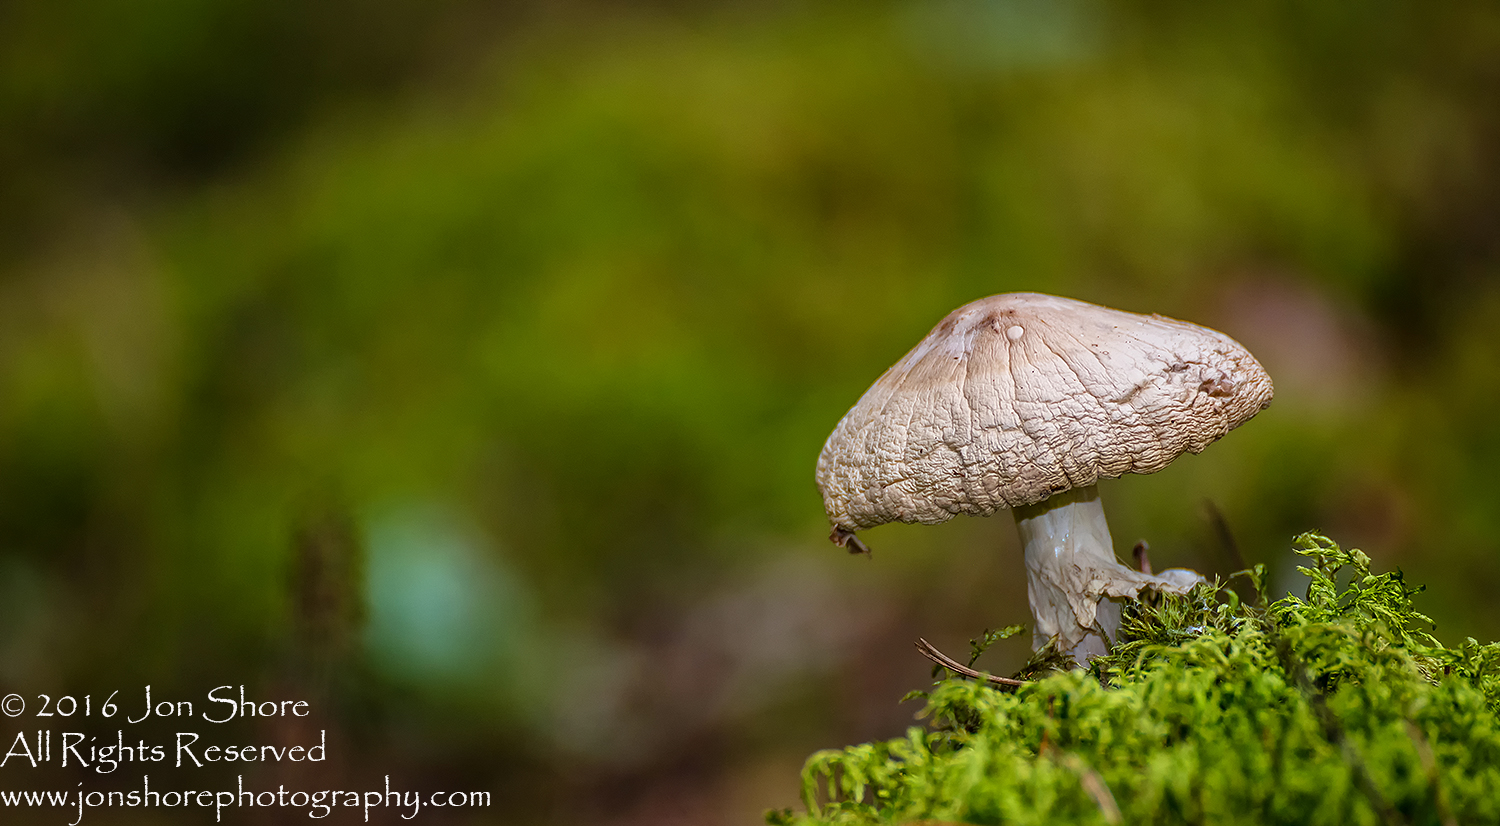 Mushroom Macro Closeup - Tamron 90mm Macro Lens